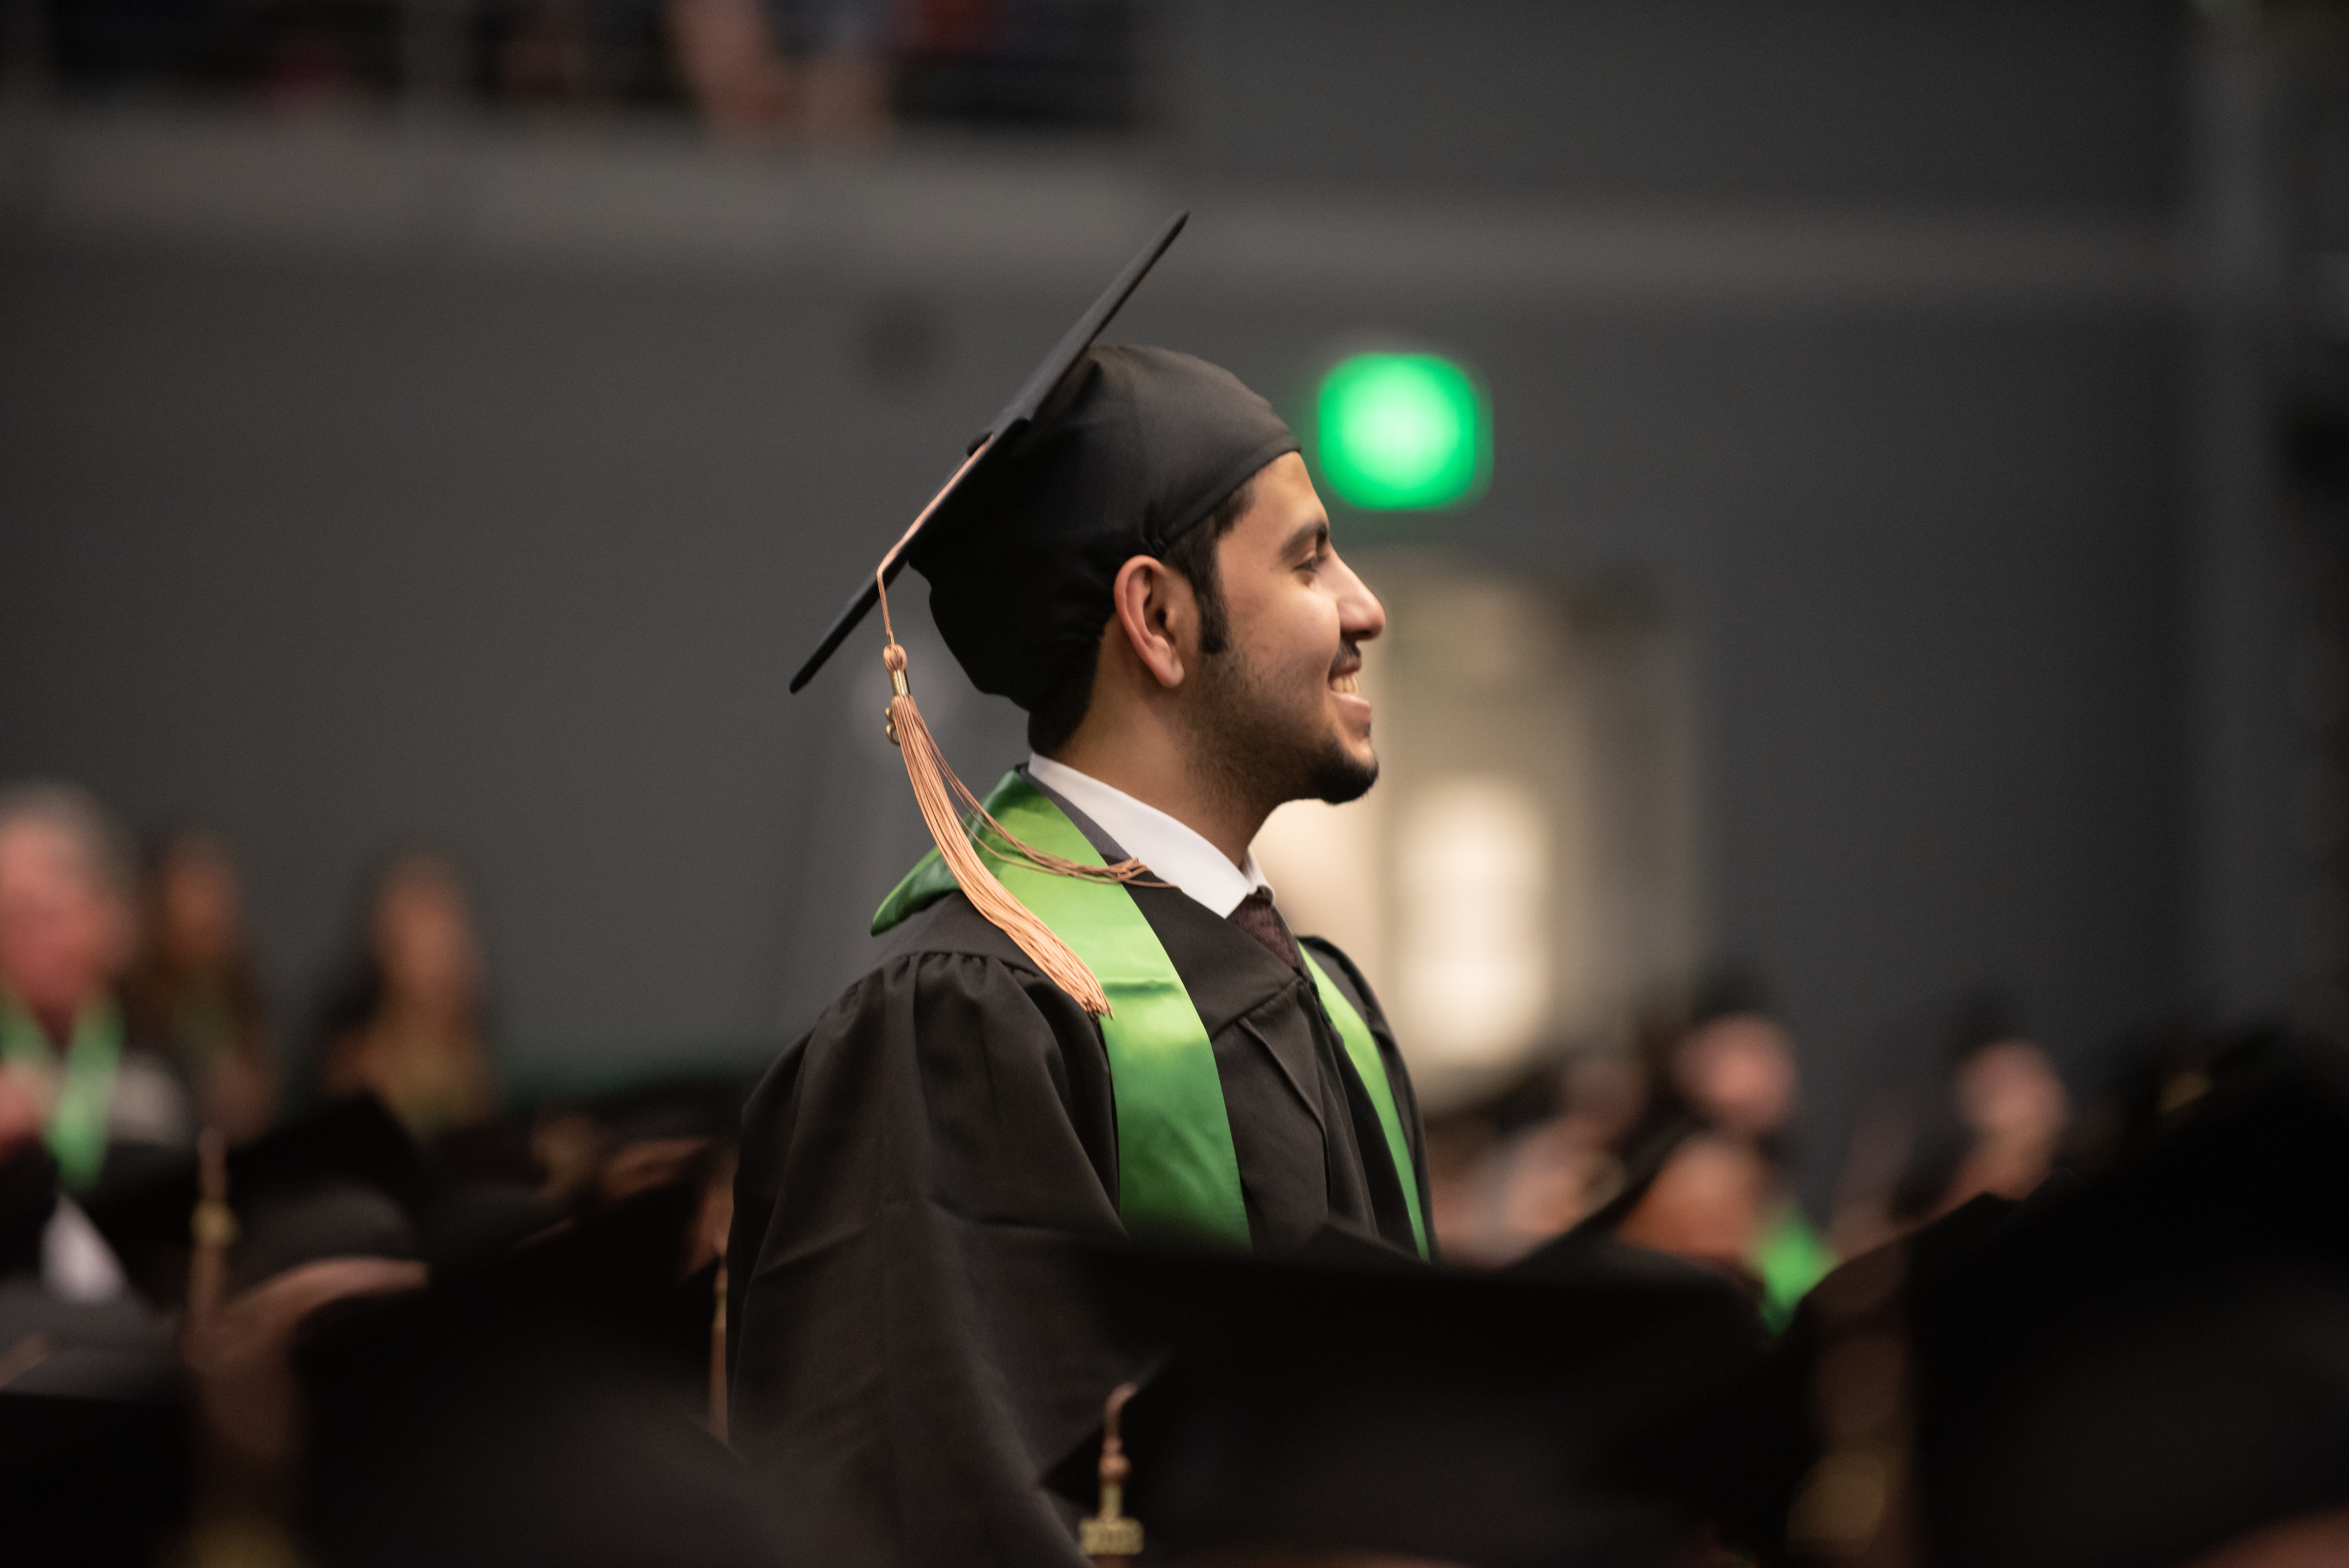 Student in graduation cap smiling.